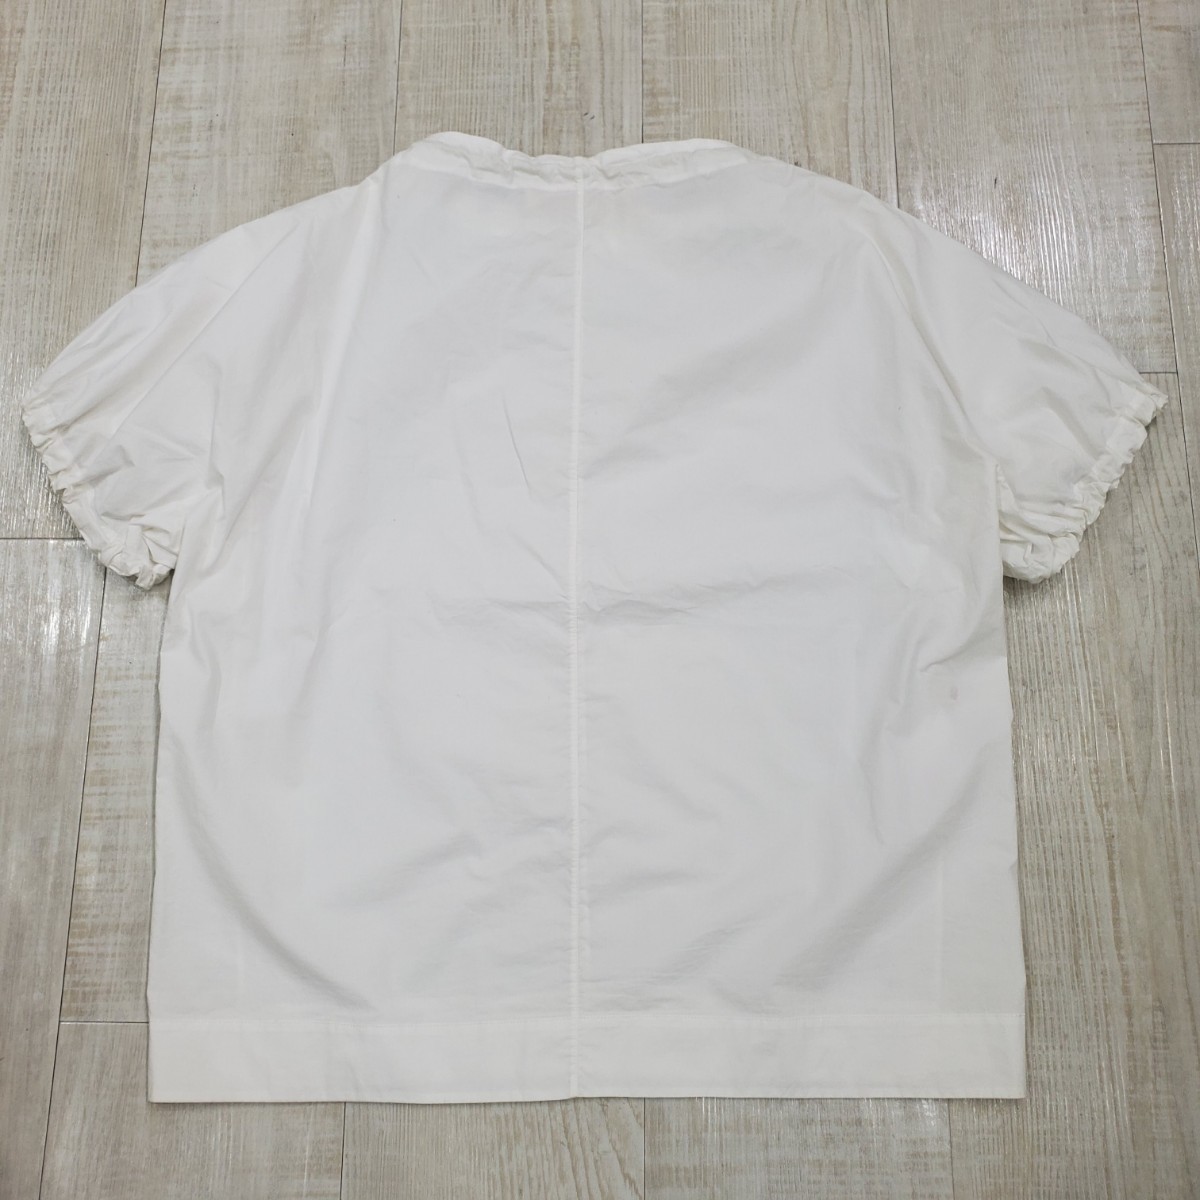 MARNI マルニ しぼり ドローコード プルオーバー シャツ 半袖シャツ カットソー S/S SHIRT ホワイト サイズ 40_画像2